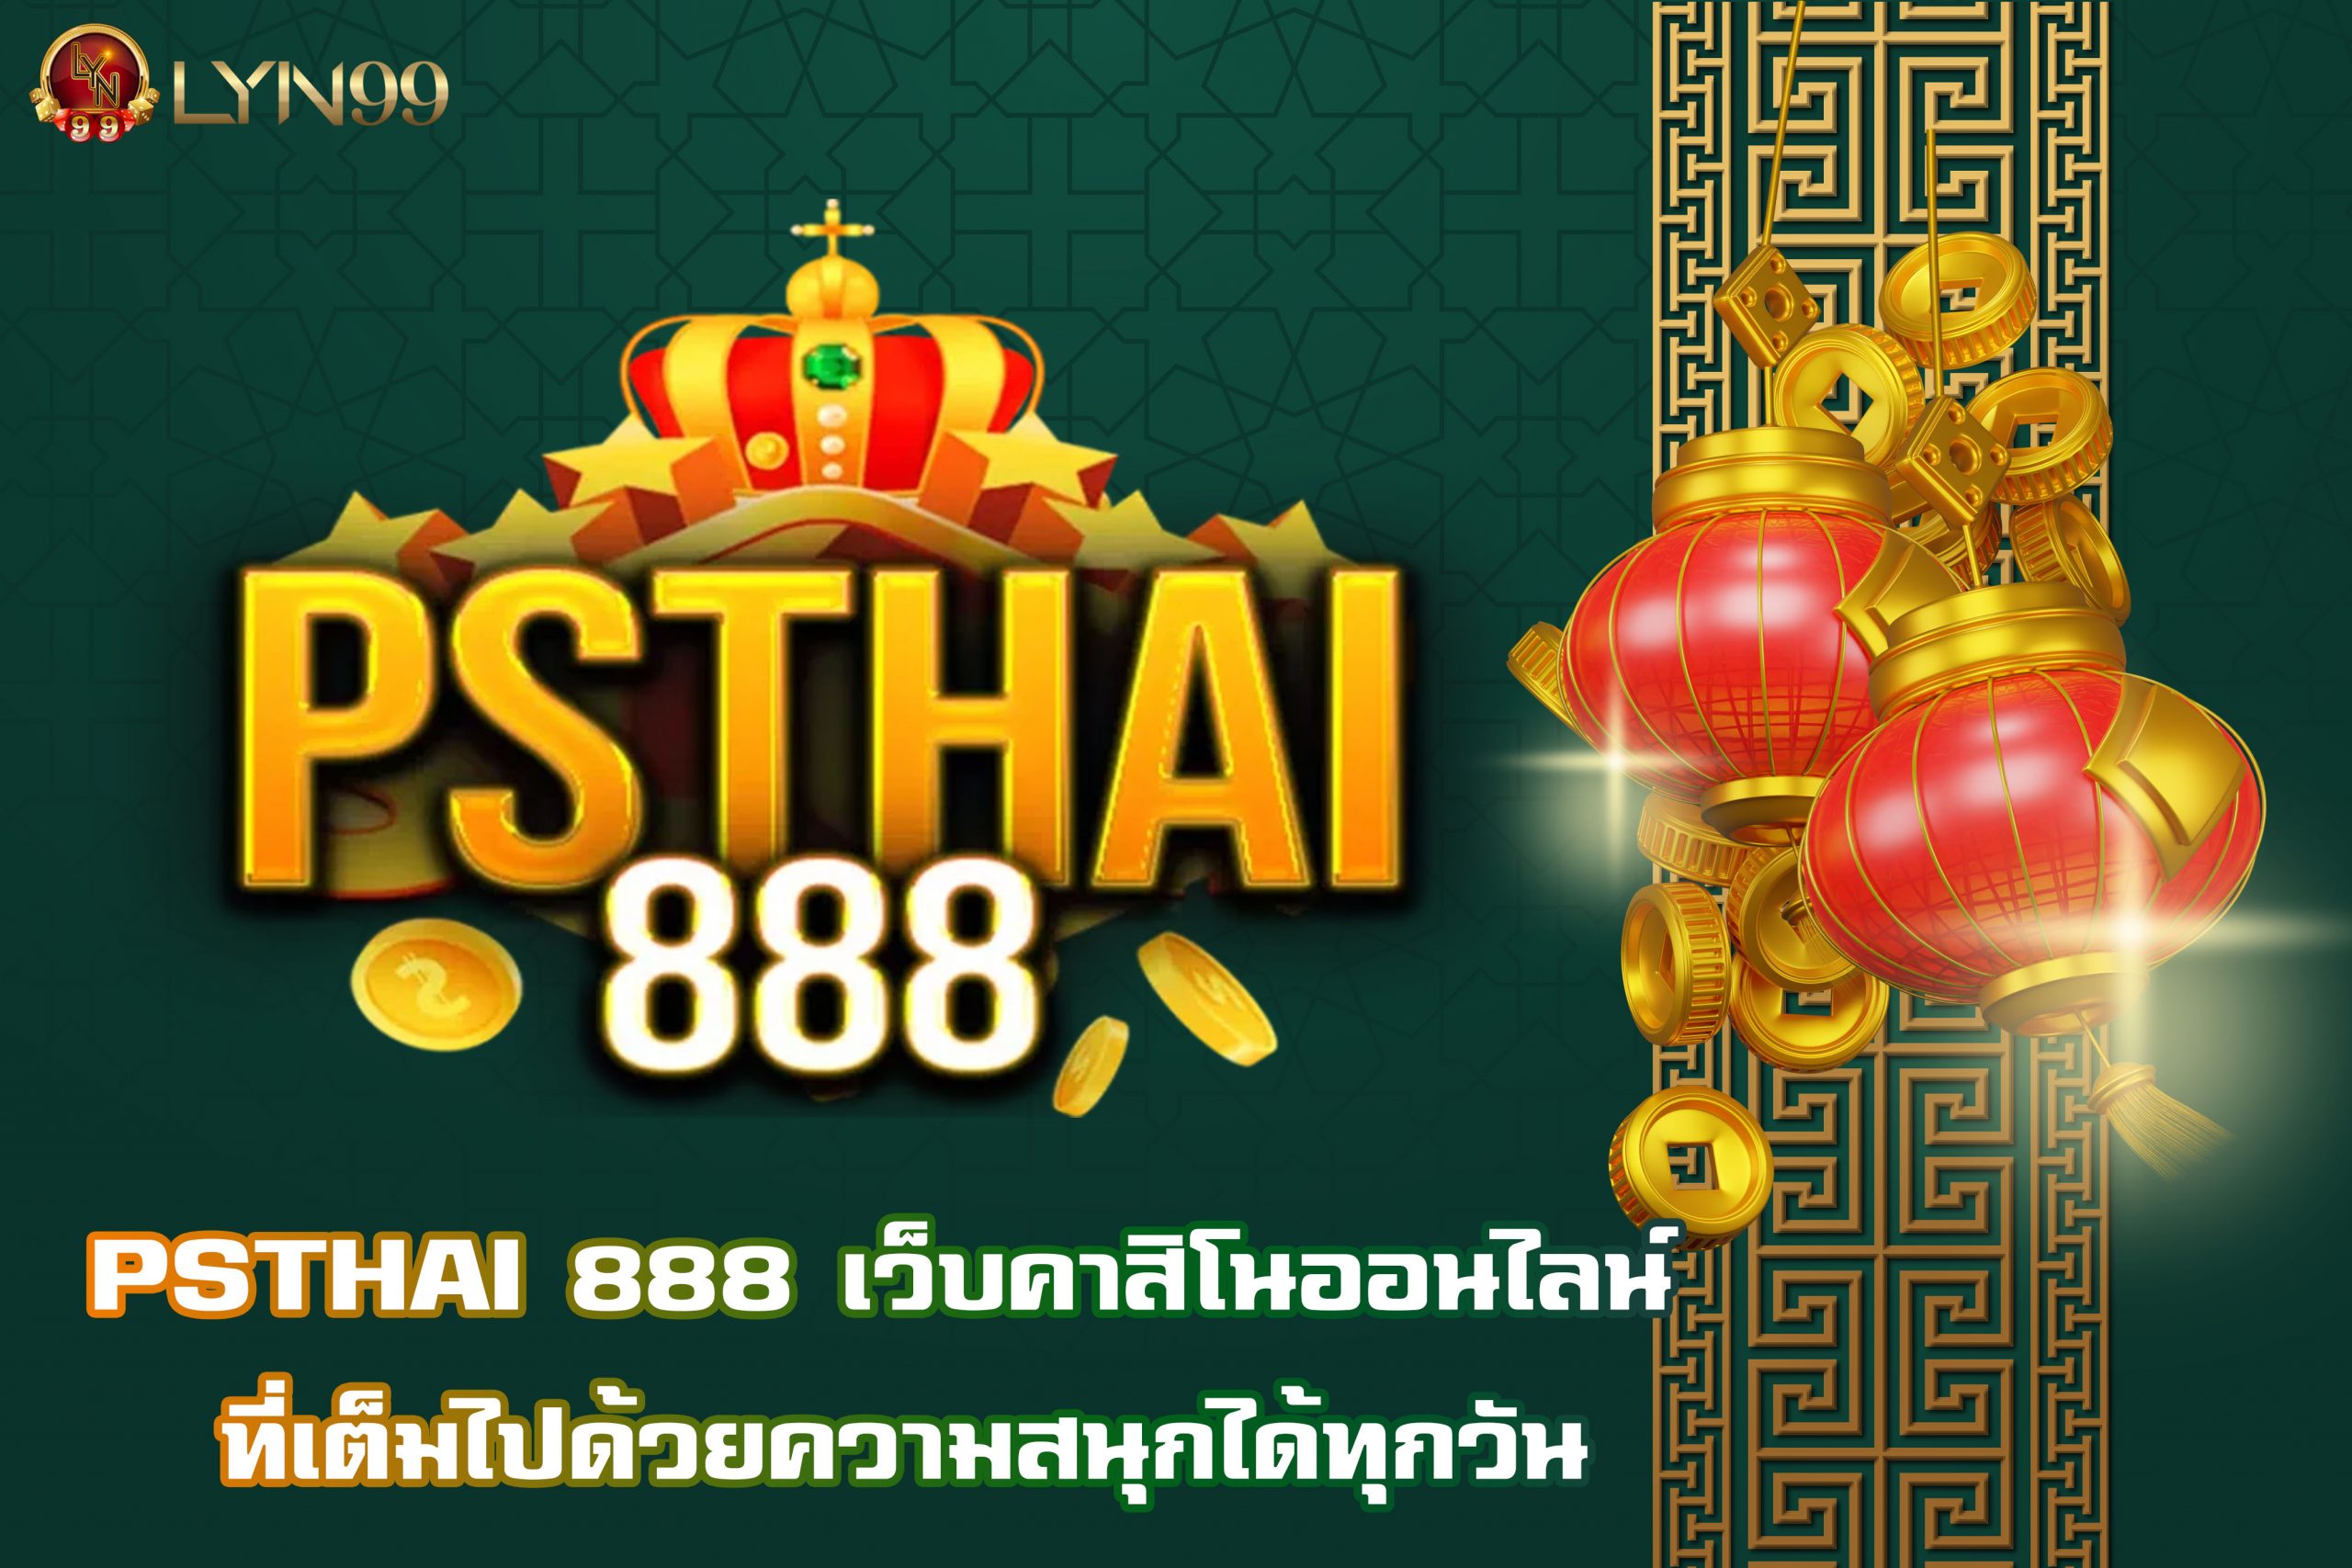 PSTHAI 888